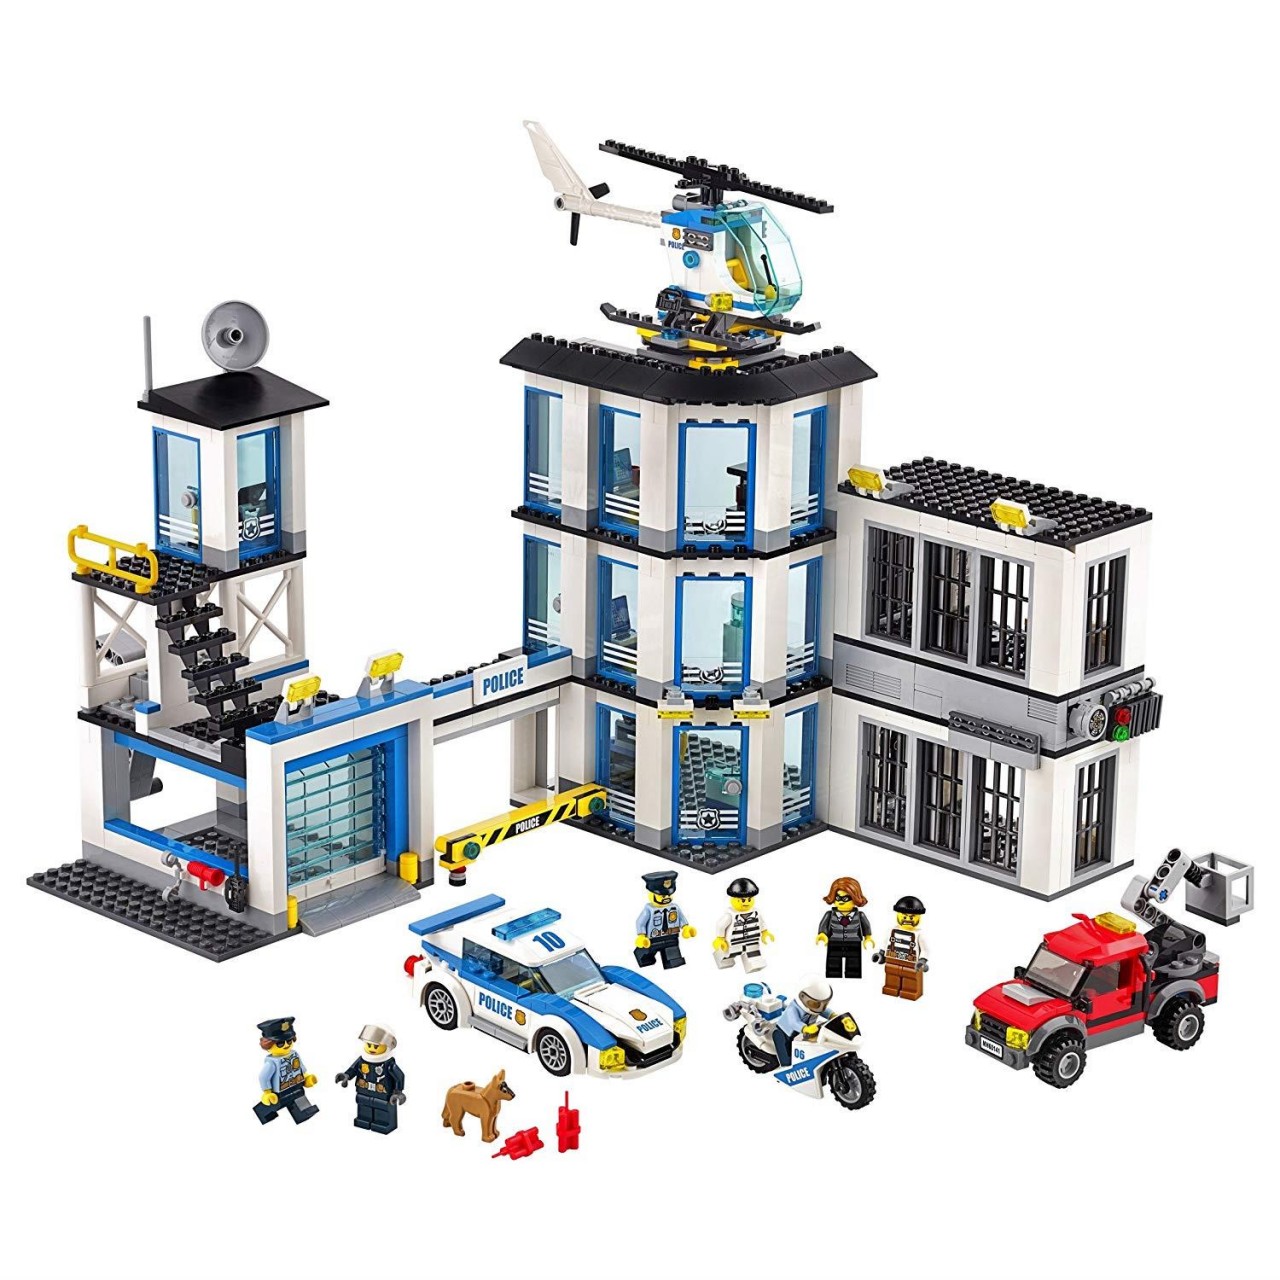 LEGO CITY 60141 Polizeiwache